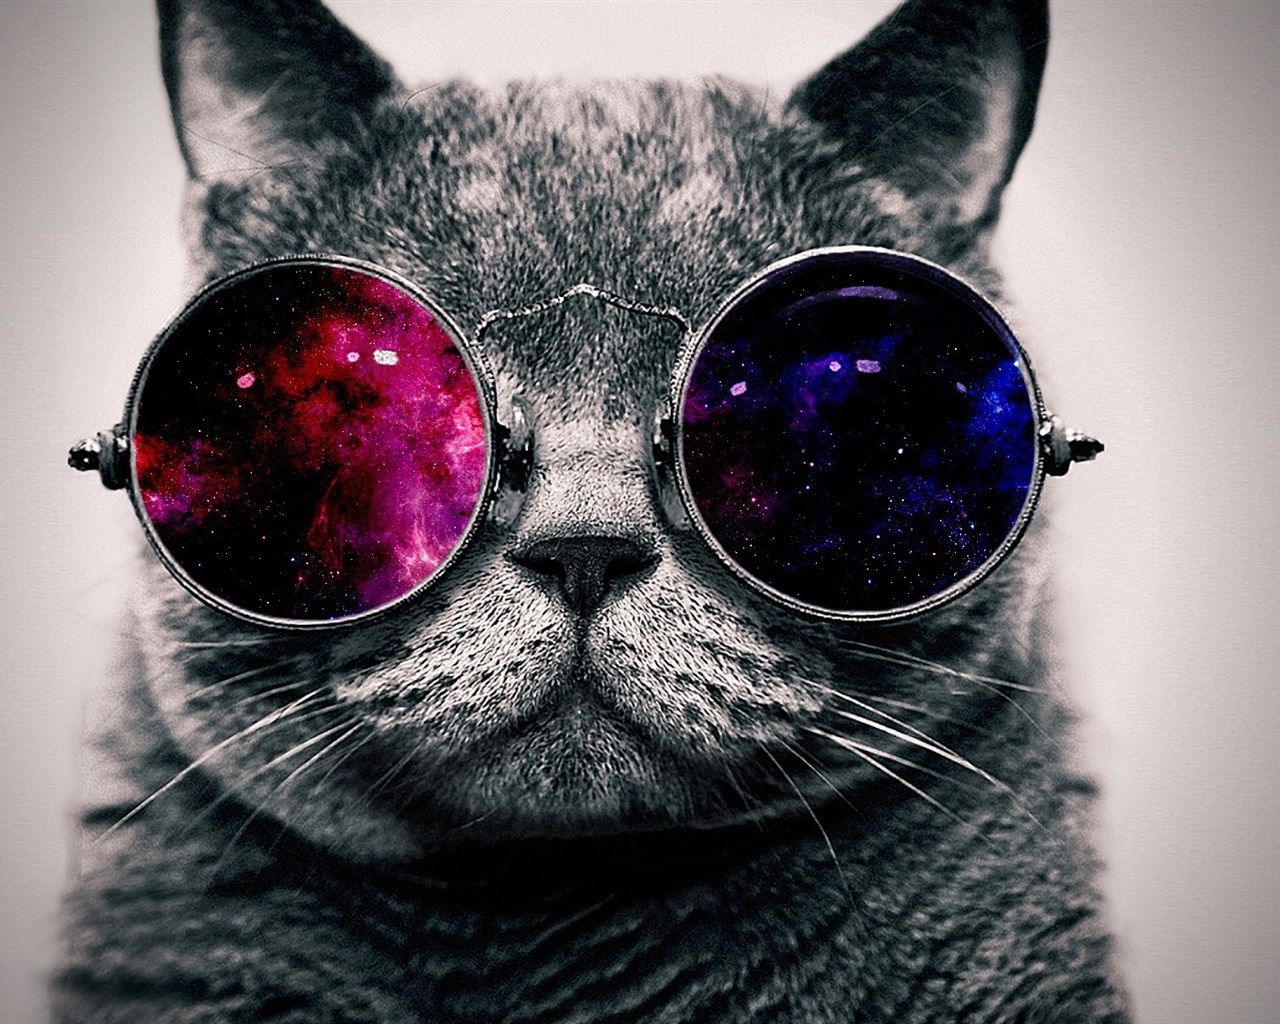  Coolsten Hintergrundbild 1280x1024. Nette Katze mit Sonnenbrille, sehr cool 1920x1200 HD Hintergrundbilder, HD, Bild